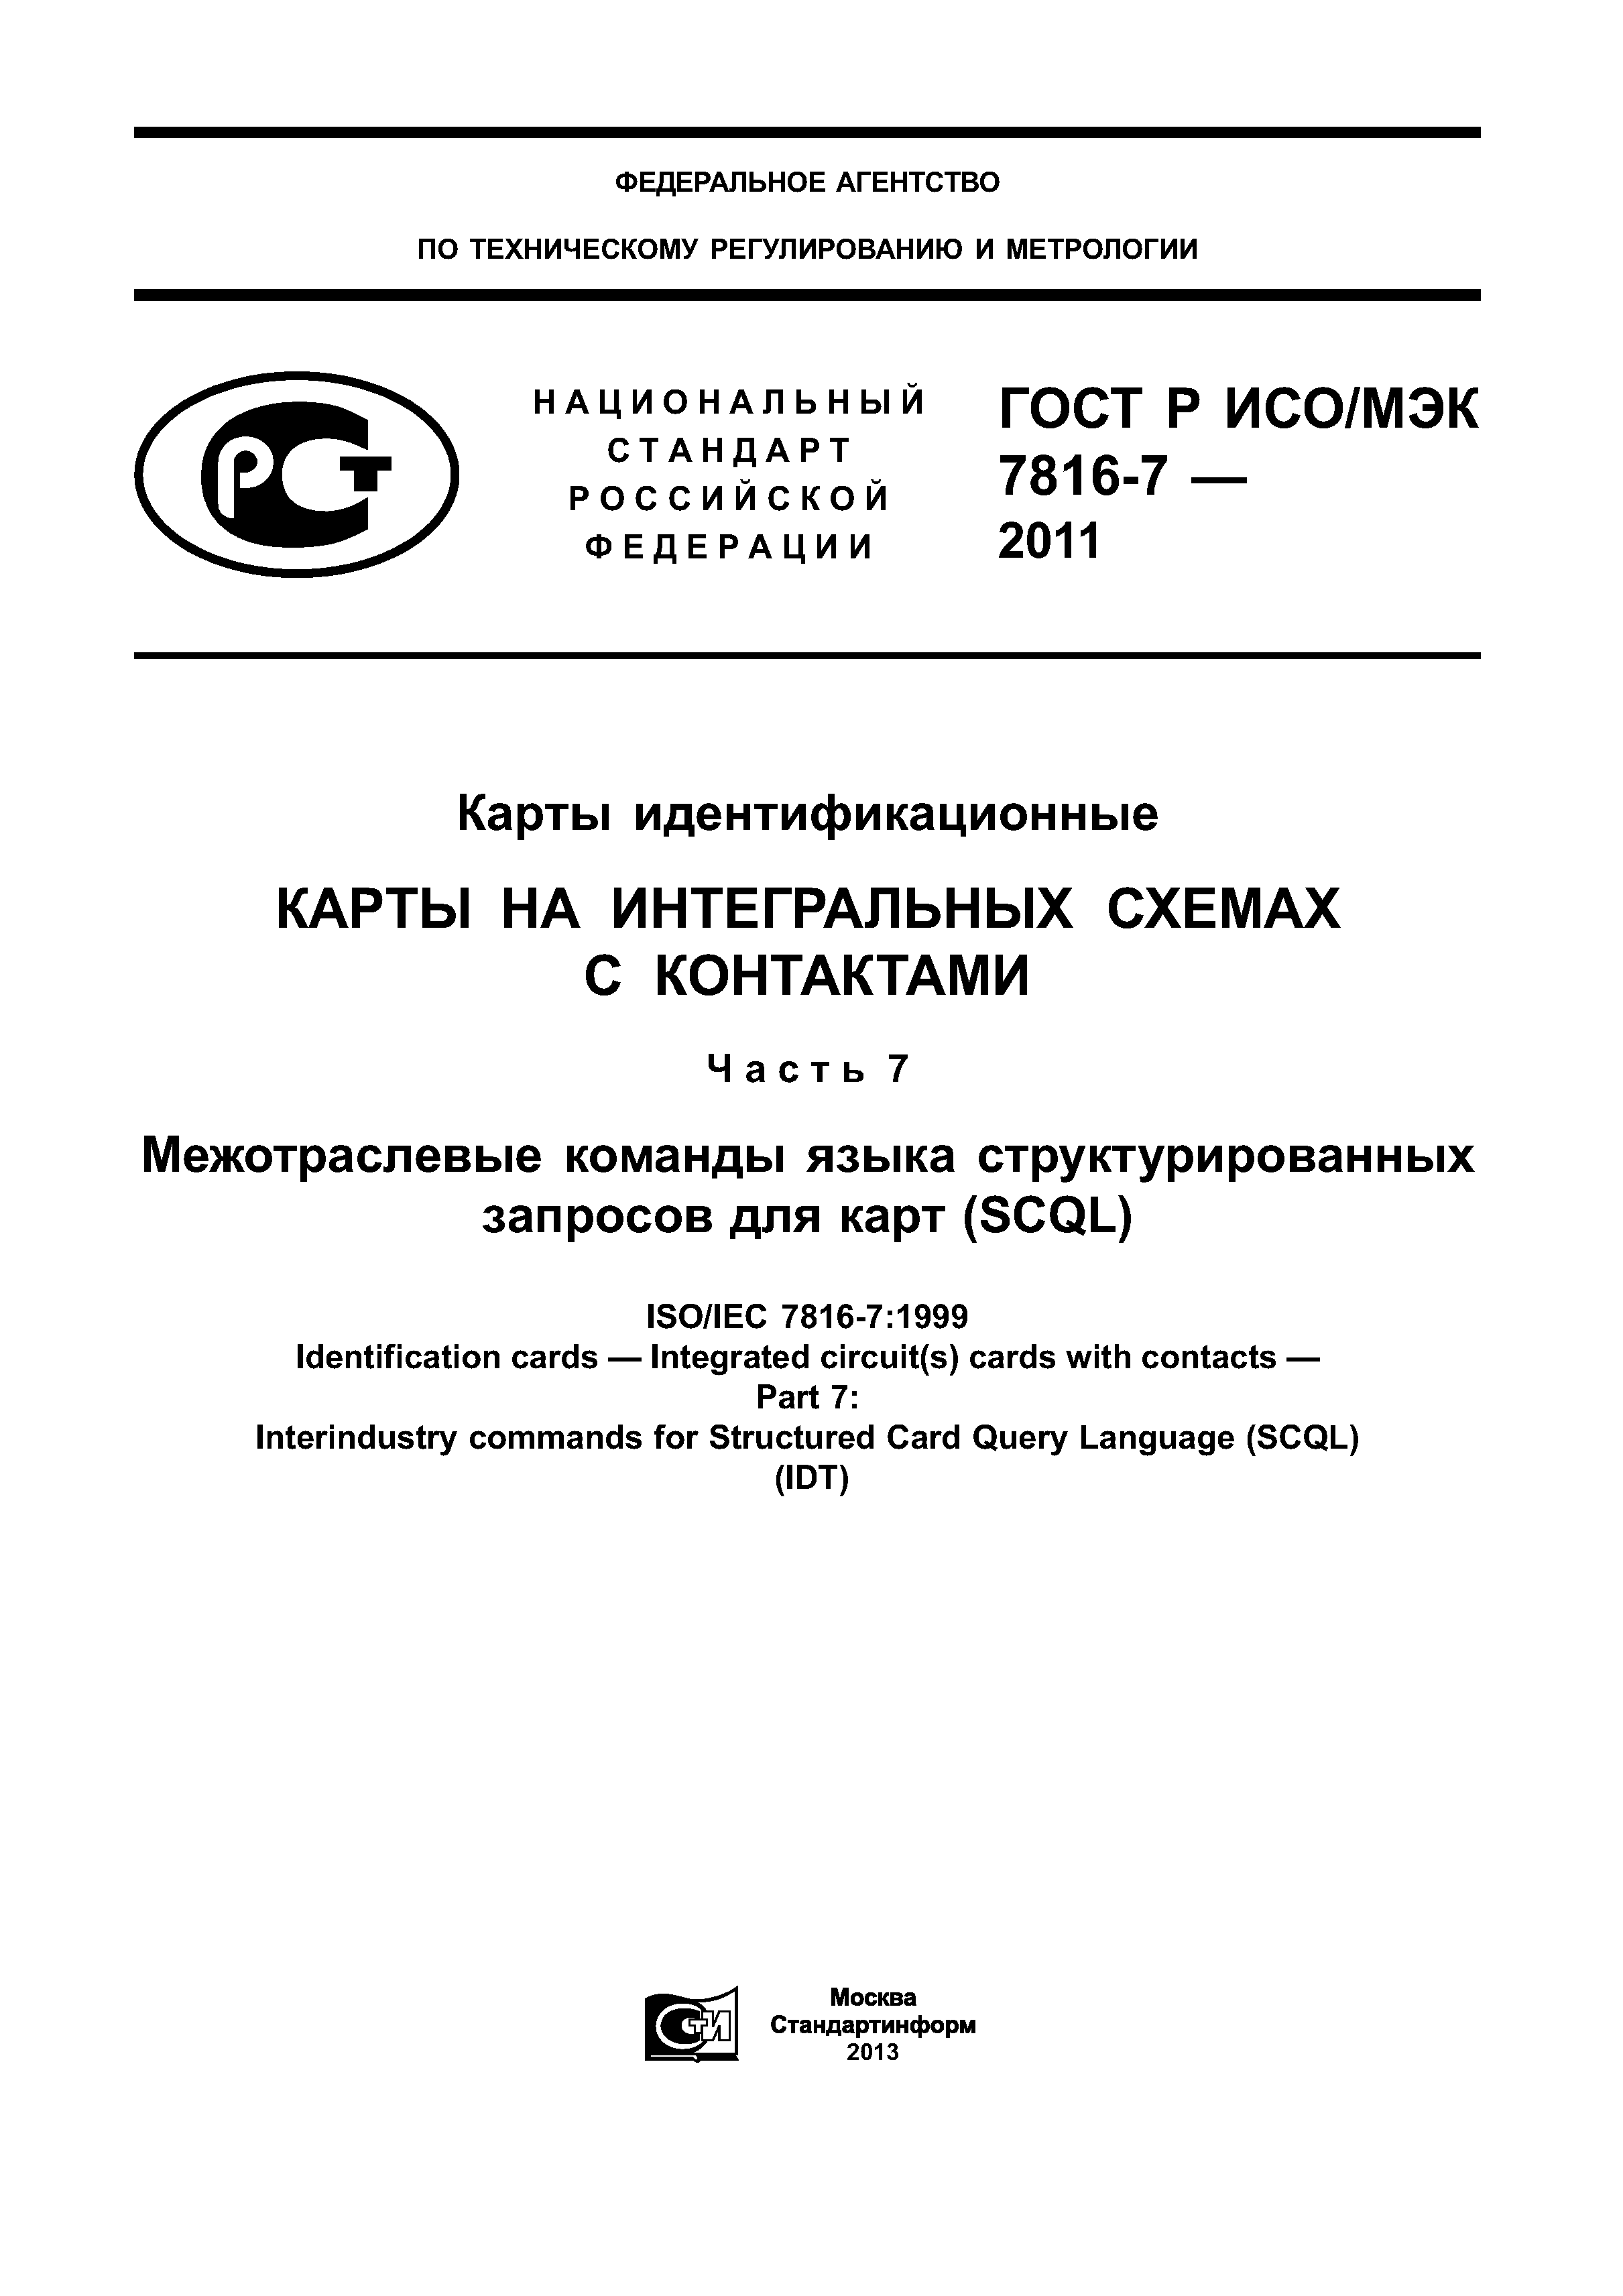 ГОСТ Р ИСО/МЭК 7816-7-2011